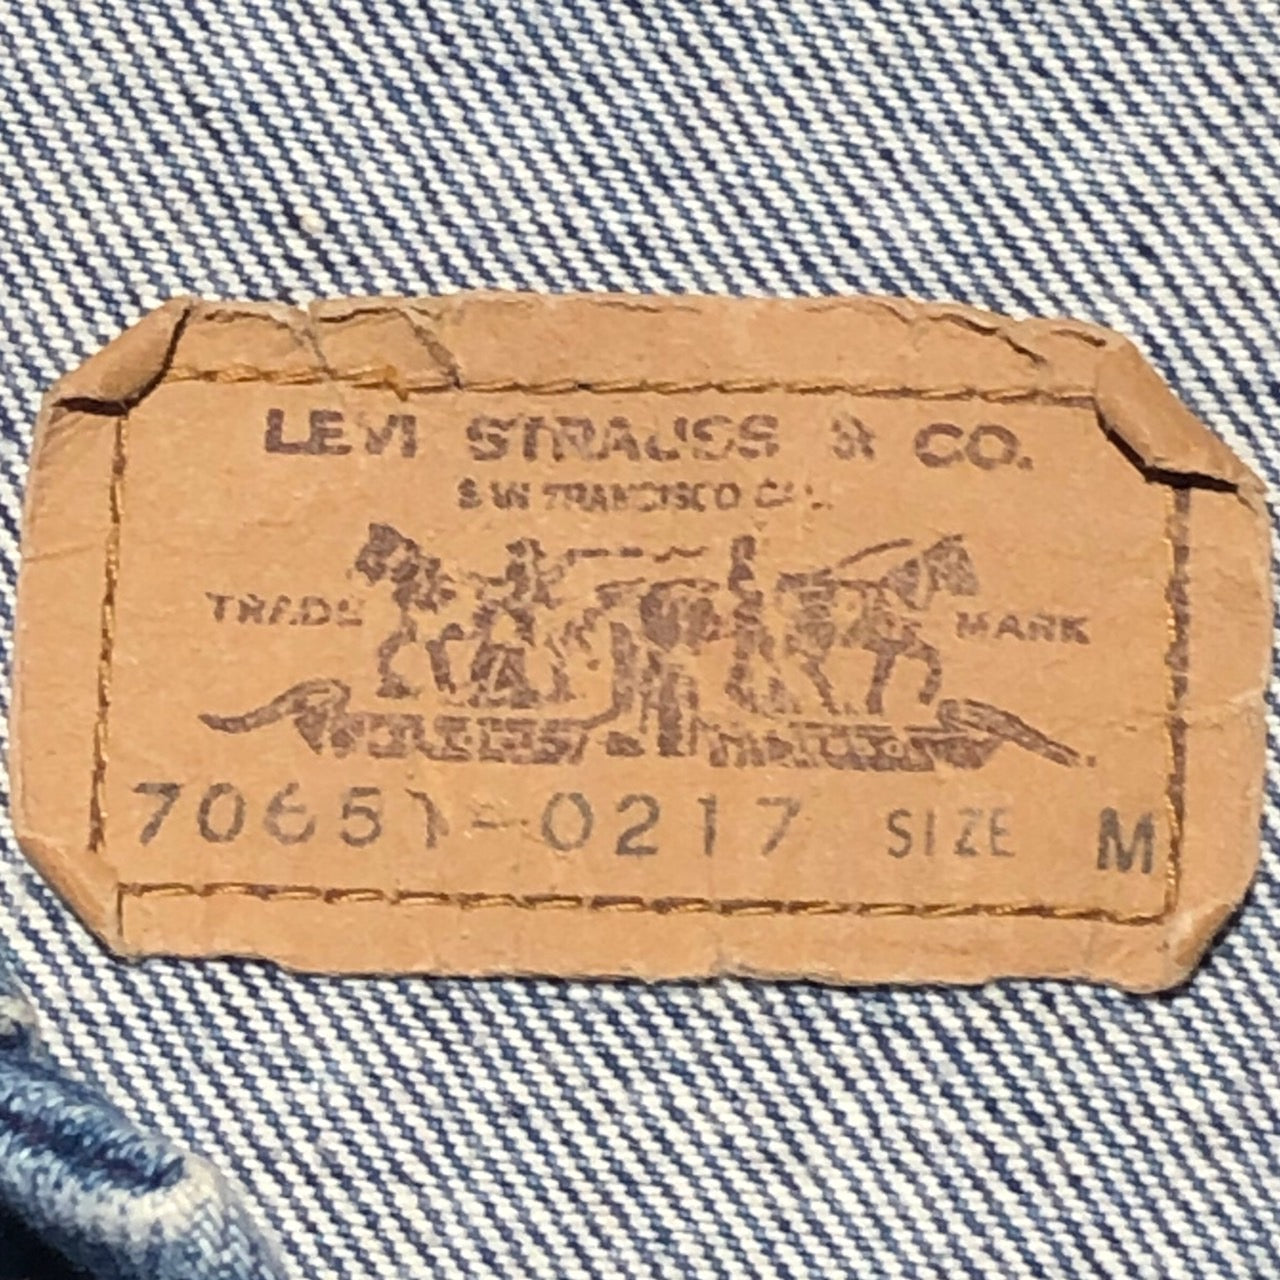 Levi's(リーバイス) 80's 3rdデニムジャケット 70651-0217 M ブルー